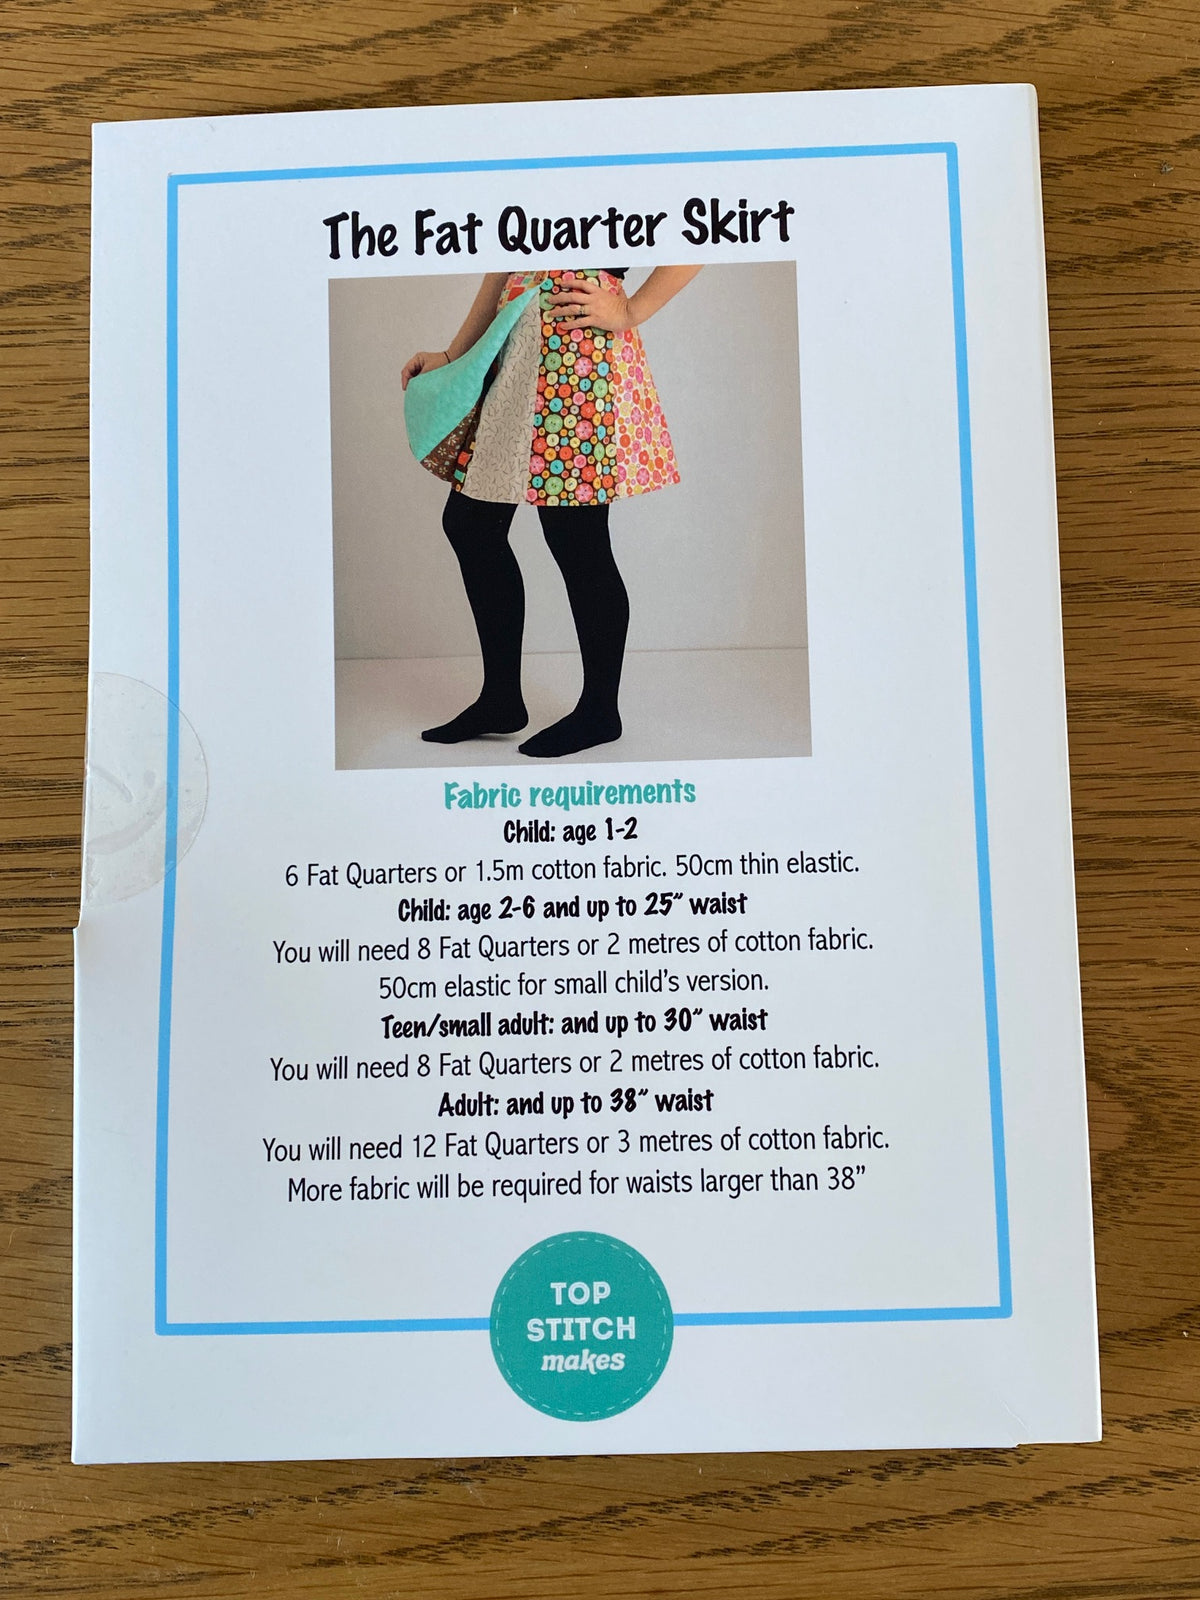 The Fat Quarter Skirt